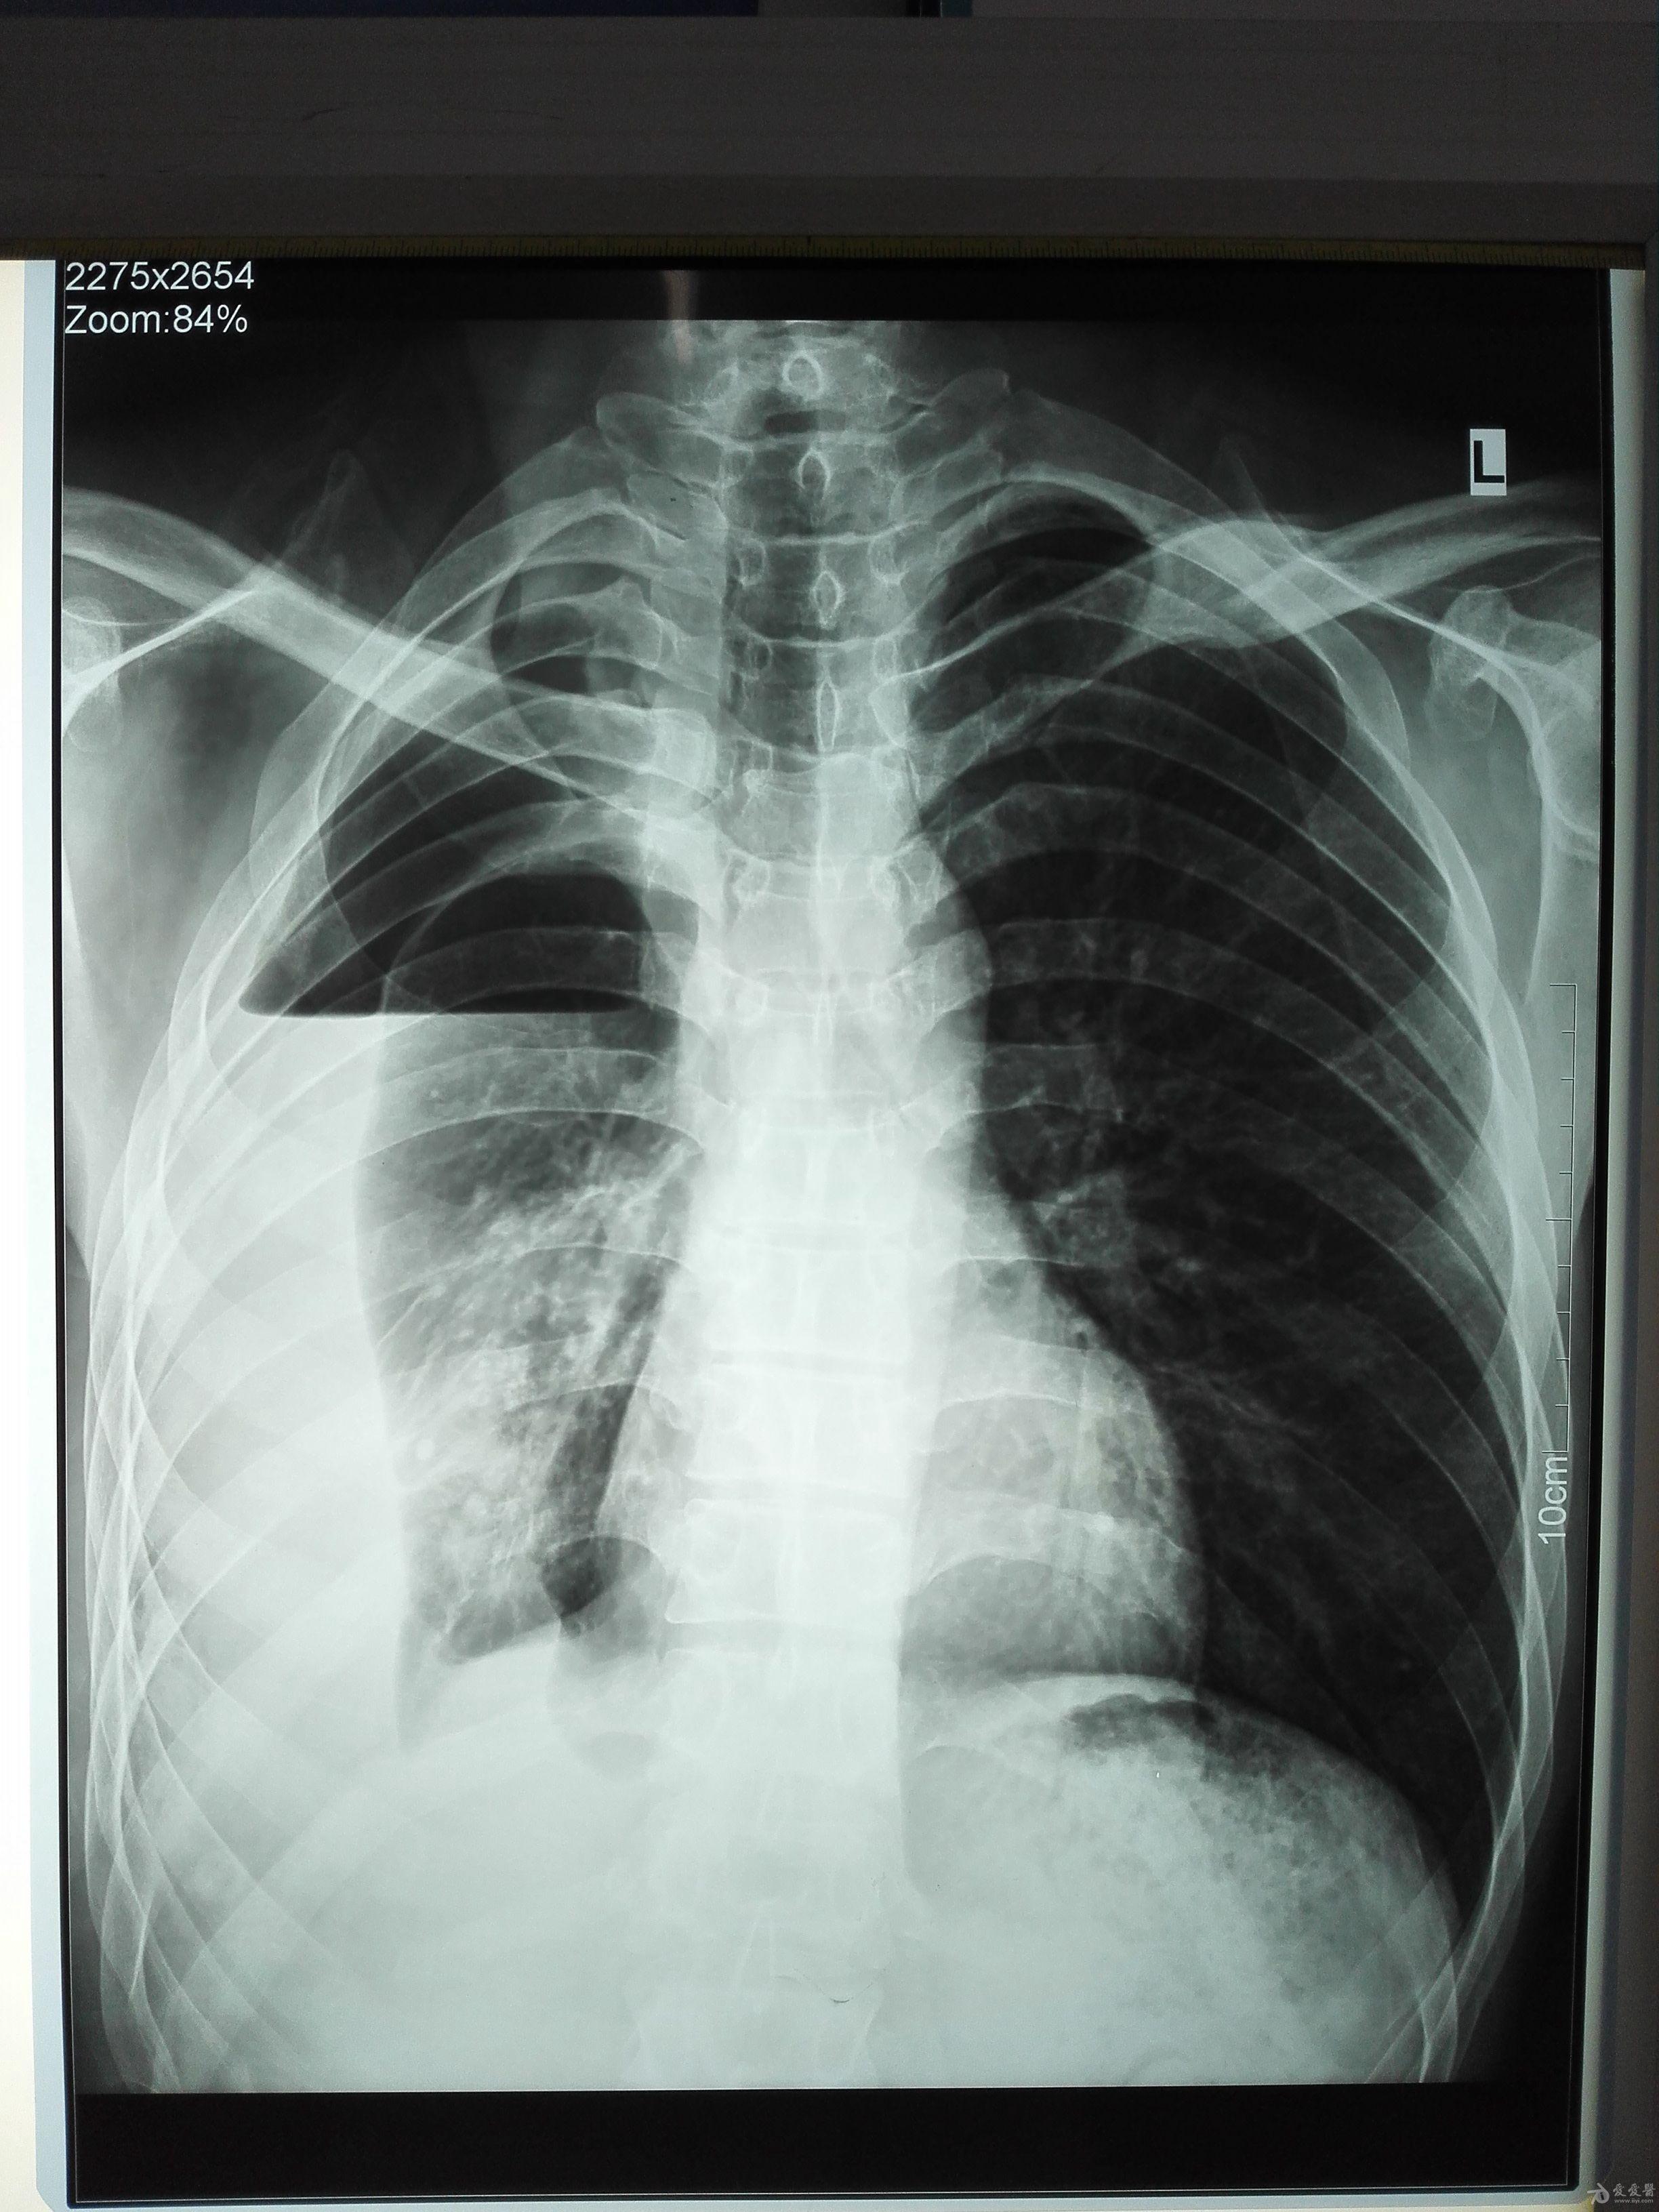 肺不张x线图片